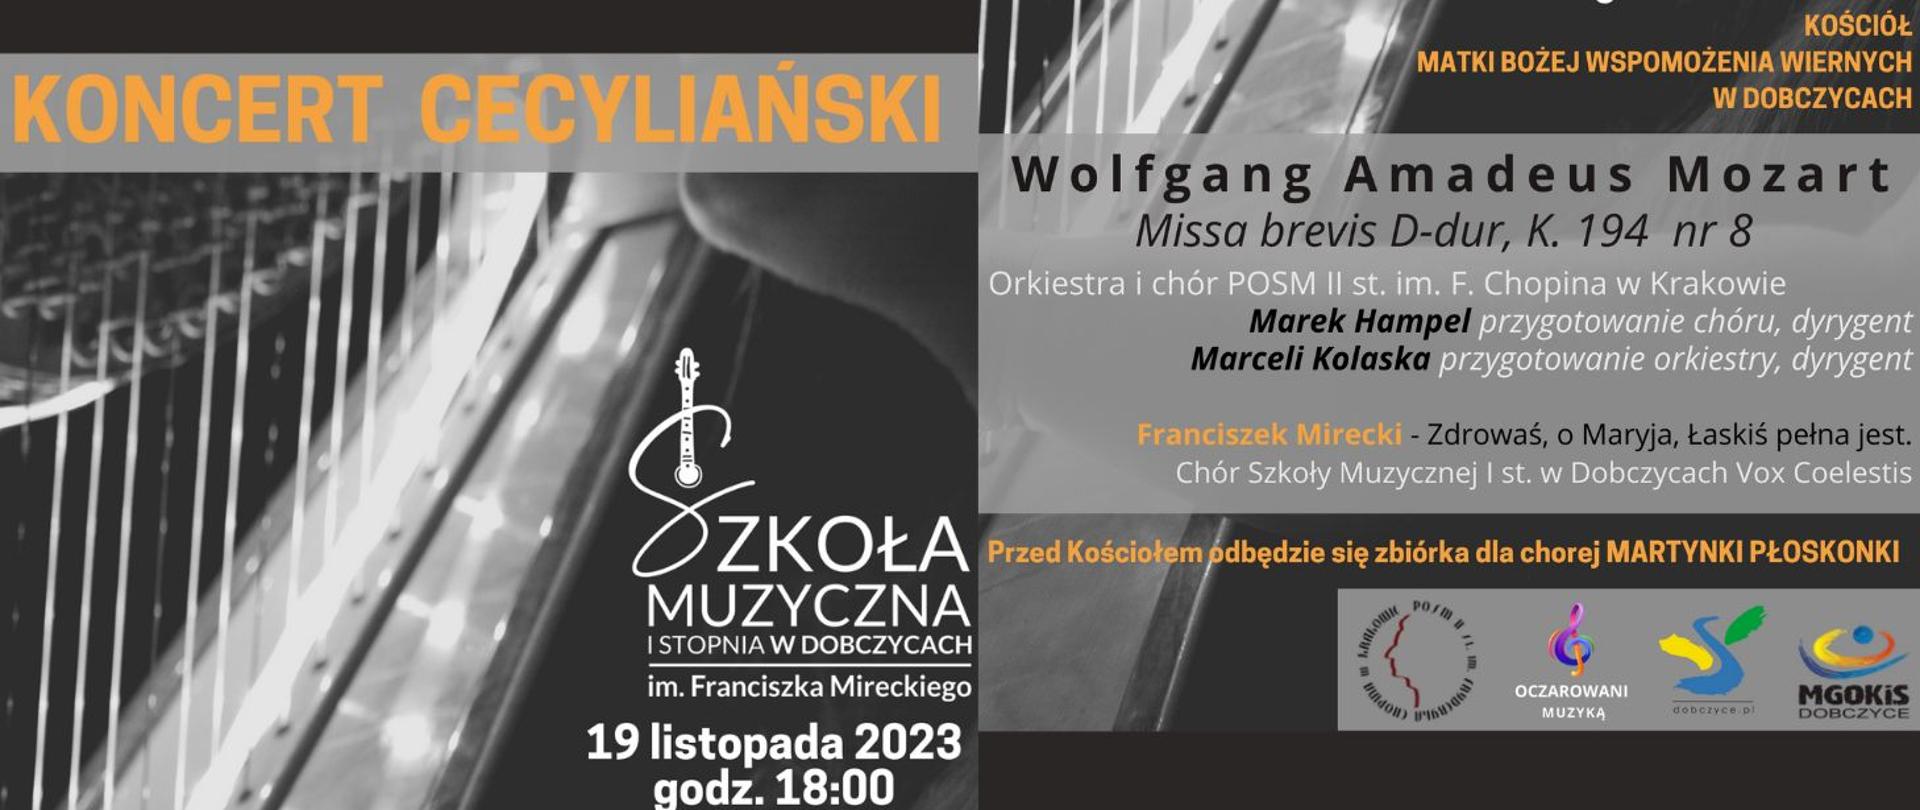 Plakat koncertu, w tle fragment harfy, tekst: koncert cecyliański, informacje o miejscu wydarzenia, programie koncertu i wykonawcach